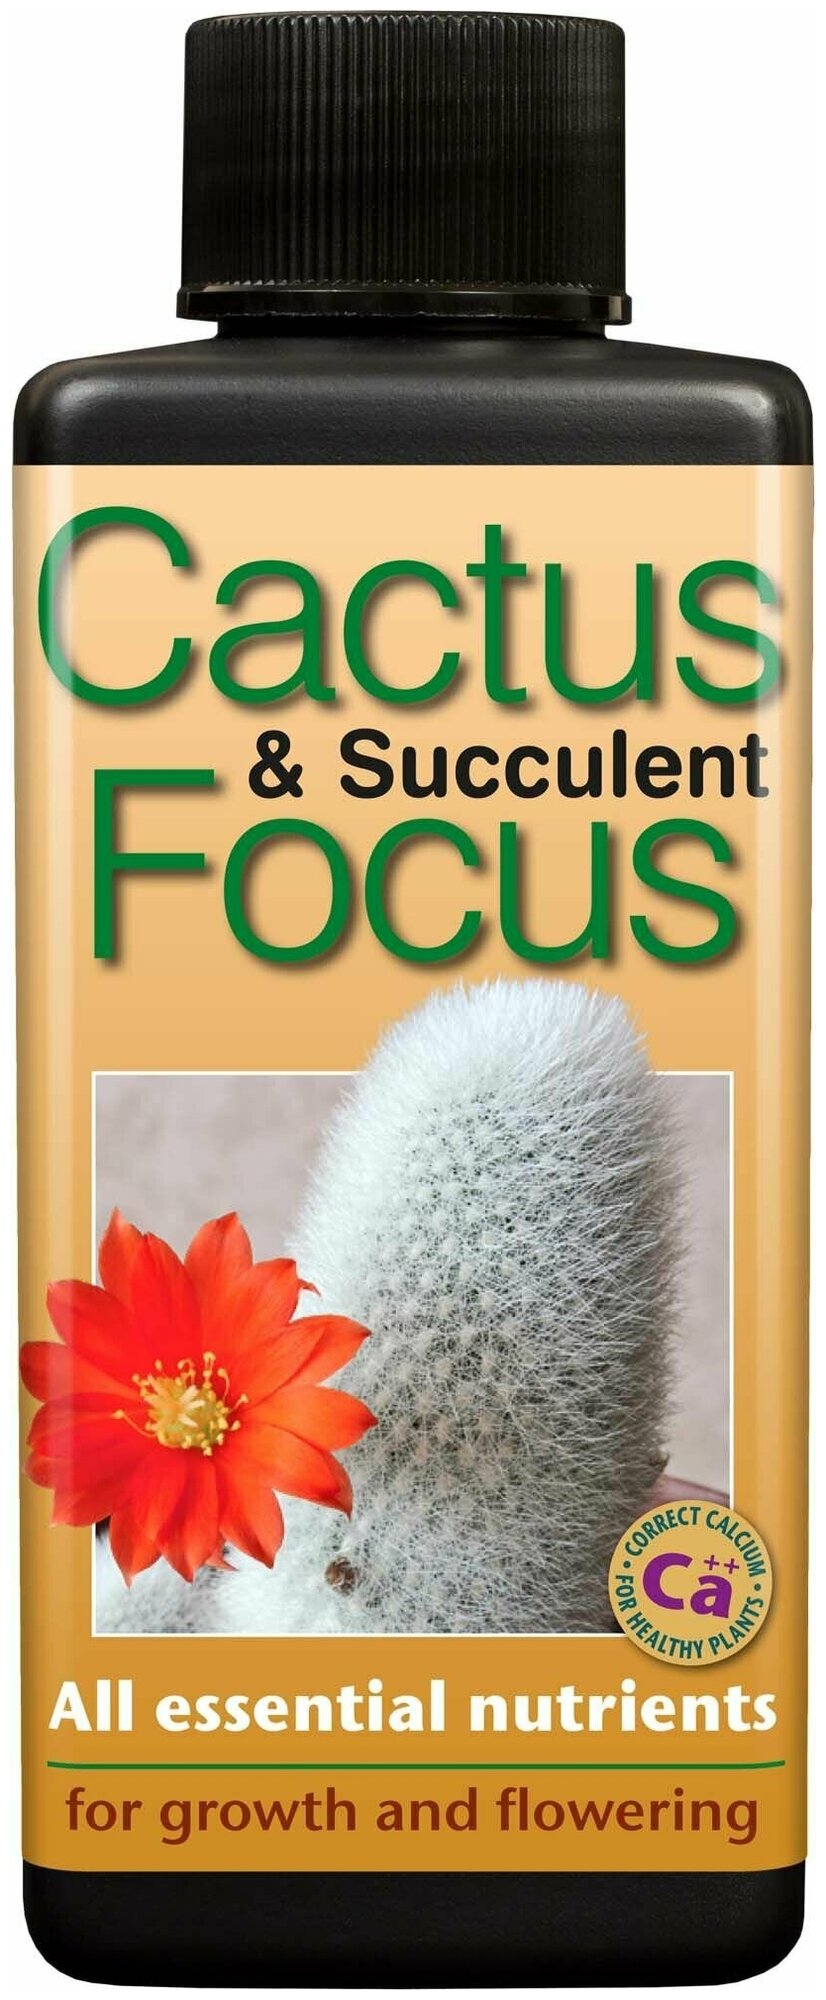 Удобрение Cactus & Succulent Focus для кактусов и суккулентов Growth Technology Объем 100мл